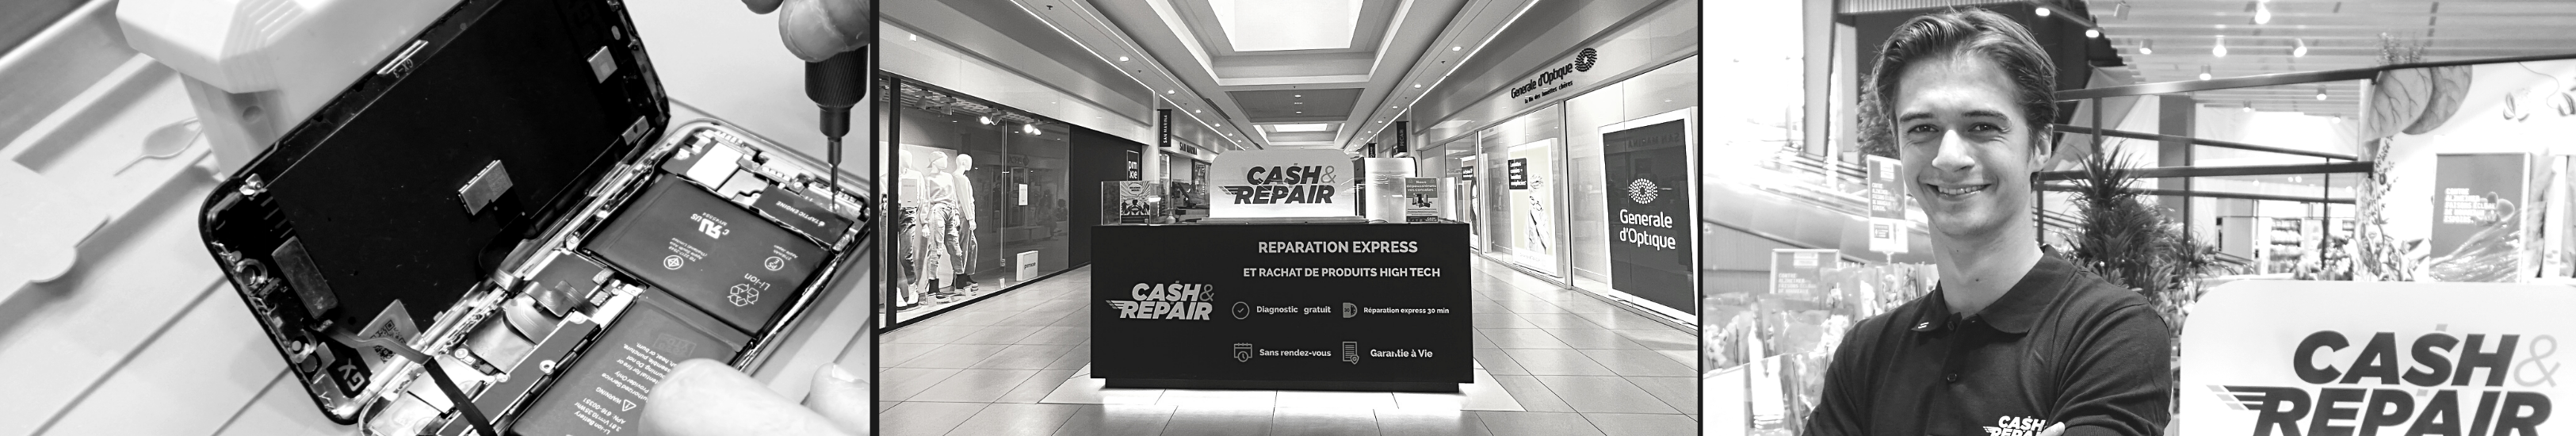 - Atelier de réparation Cash and Repair Rennes Cleunay